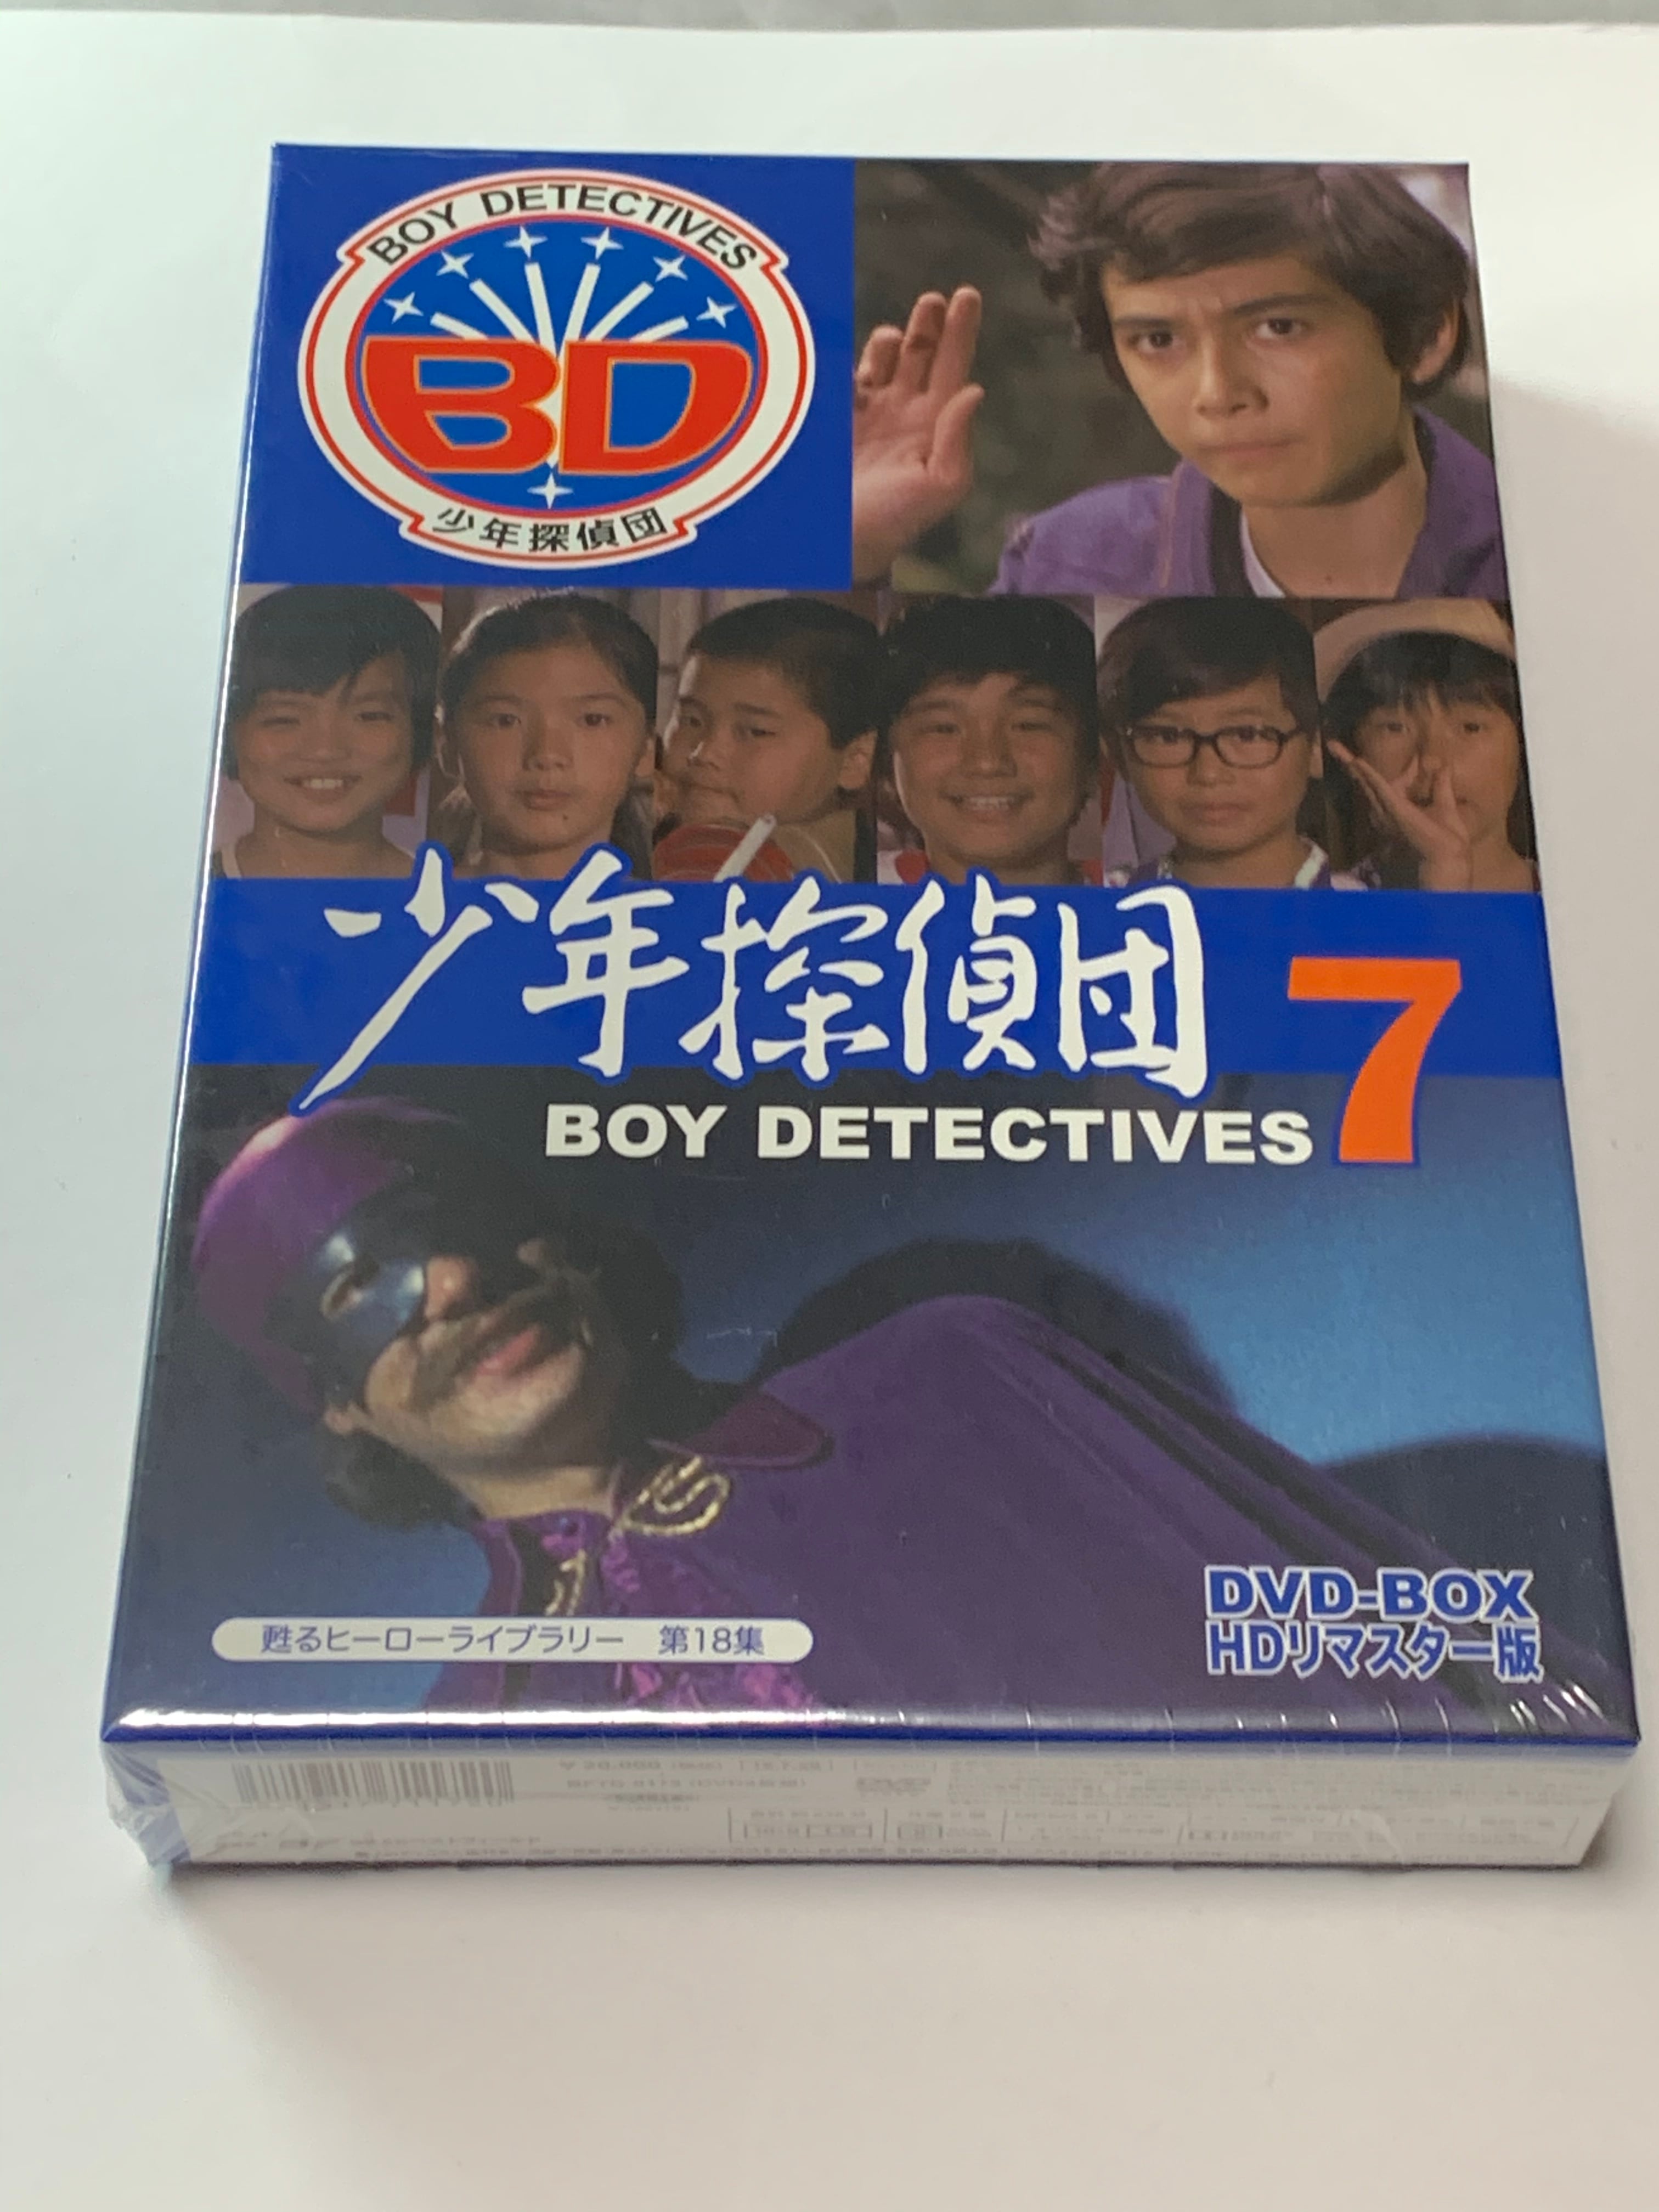 甦るヒーローライブラリー 第18集 少年探偵団 BD7 DVD-BOX HDリ…